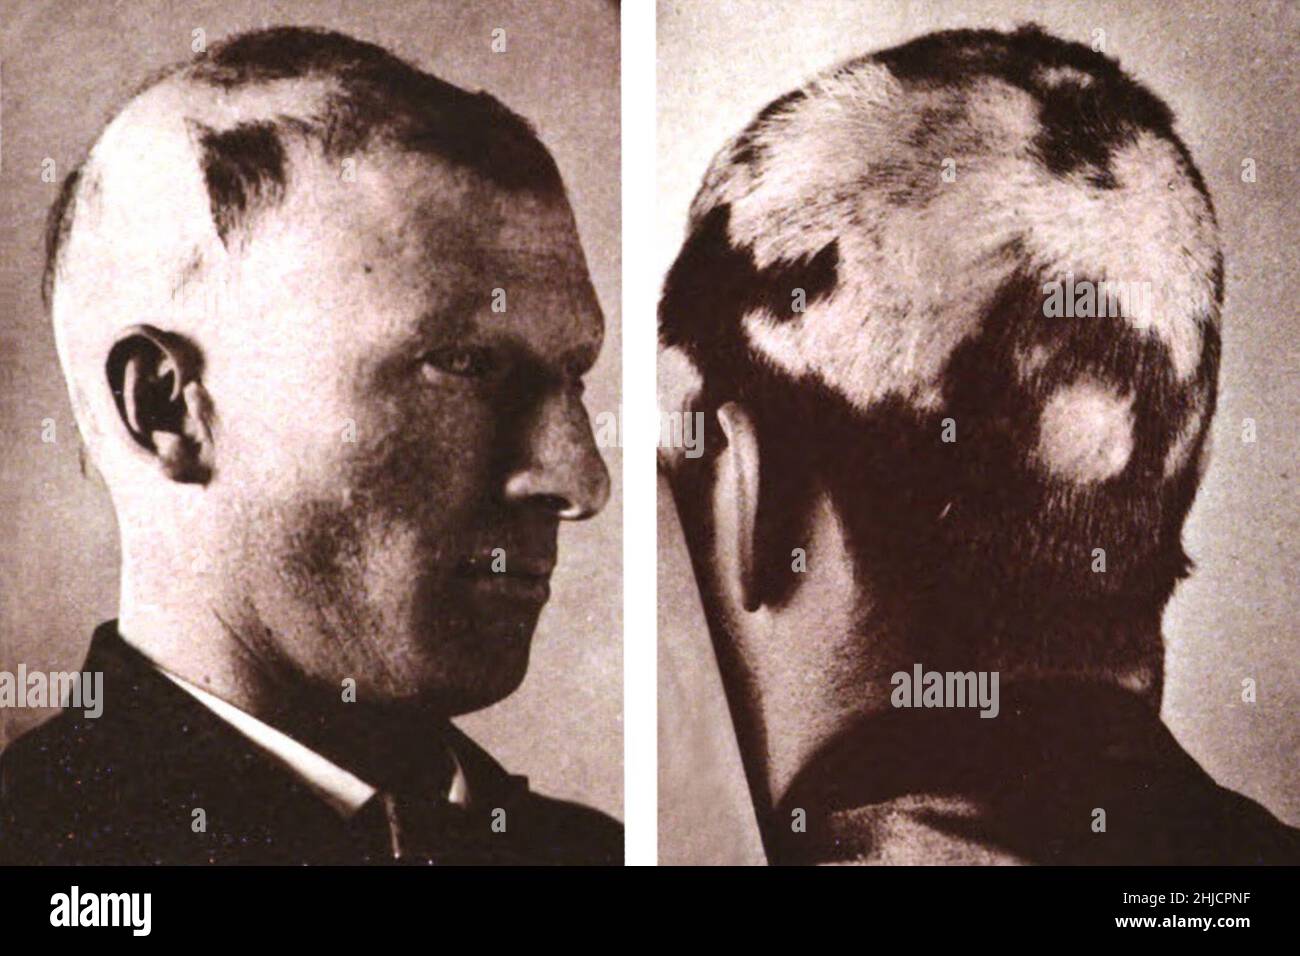 Alopécie areata, perte soudaine de cheveux qui commence avec un ou plusieurs patches circulaires chauves qui peuvent se chevaucher.Photographié par George Henry Fox, 1886. Banque D'Images